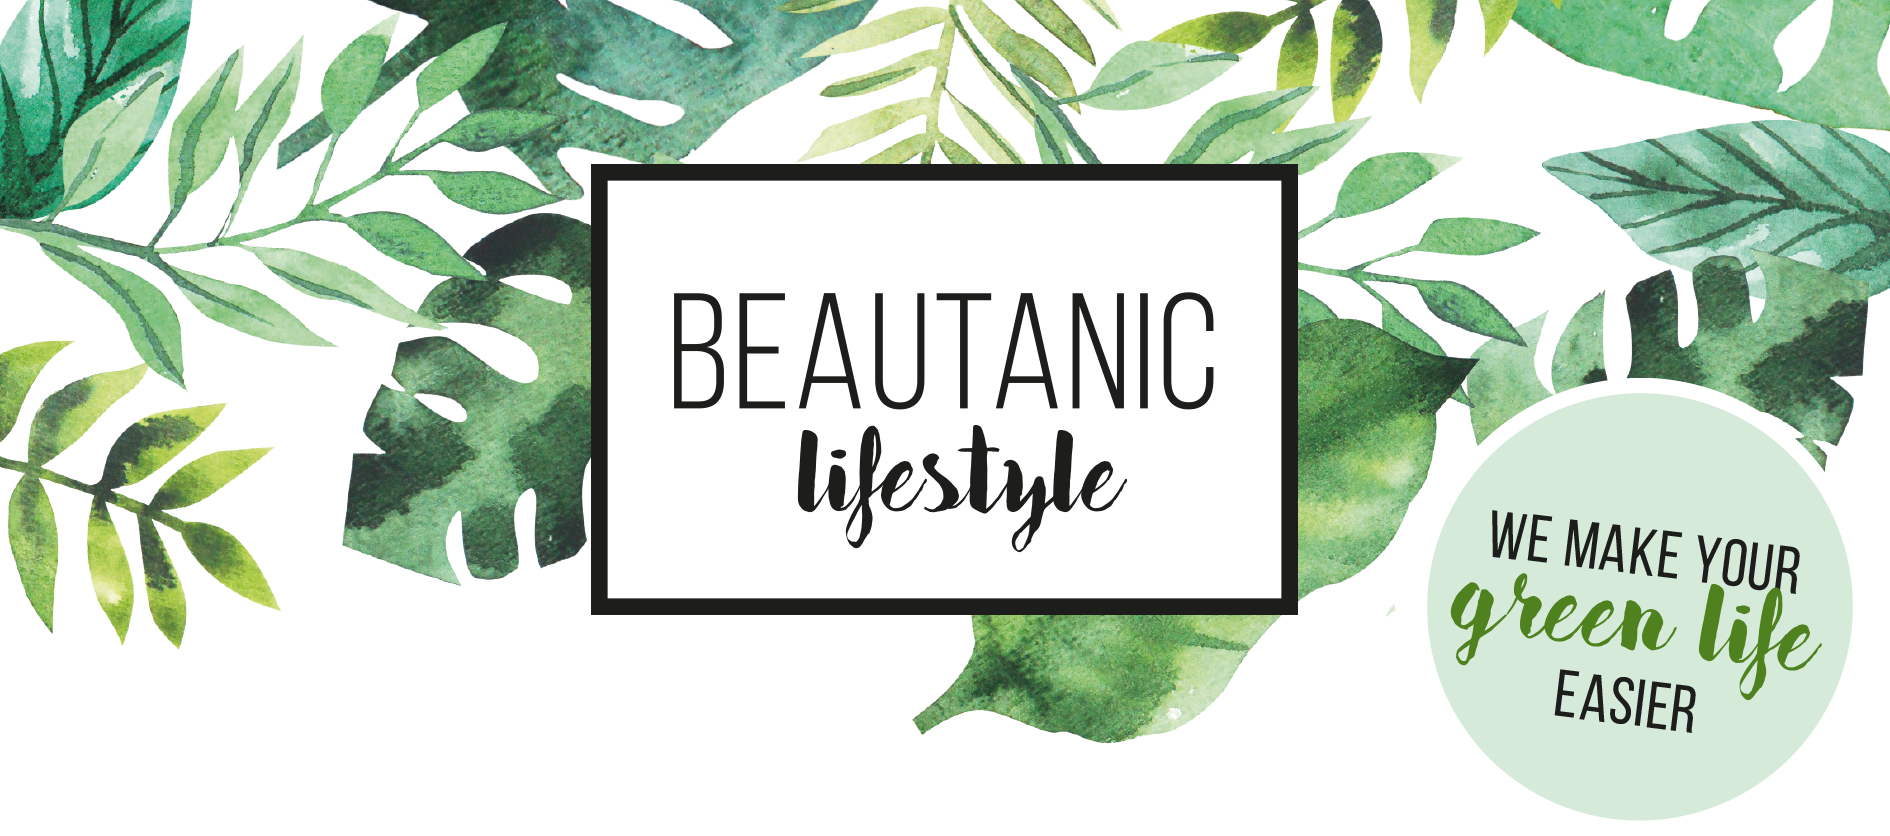 Video laden: Video over voordelen van Beautanic Lifestyle